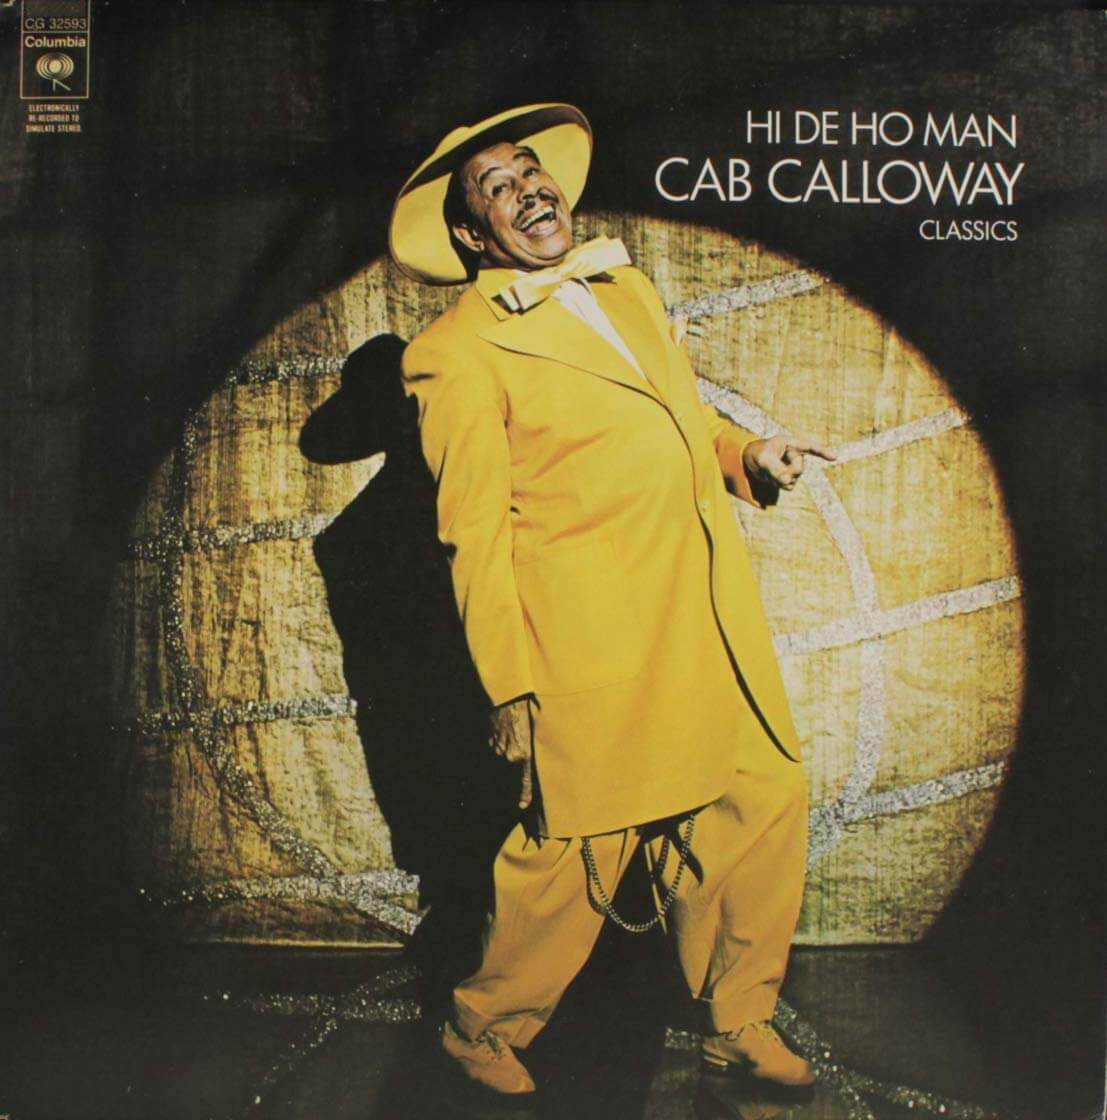 1974 Cab Calloway – Hi De Ho Man CBS LP1.jpg